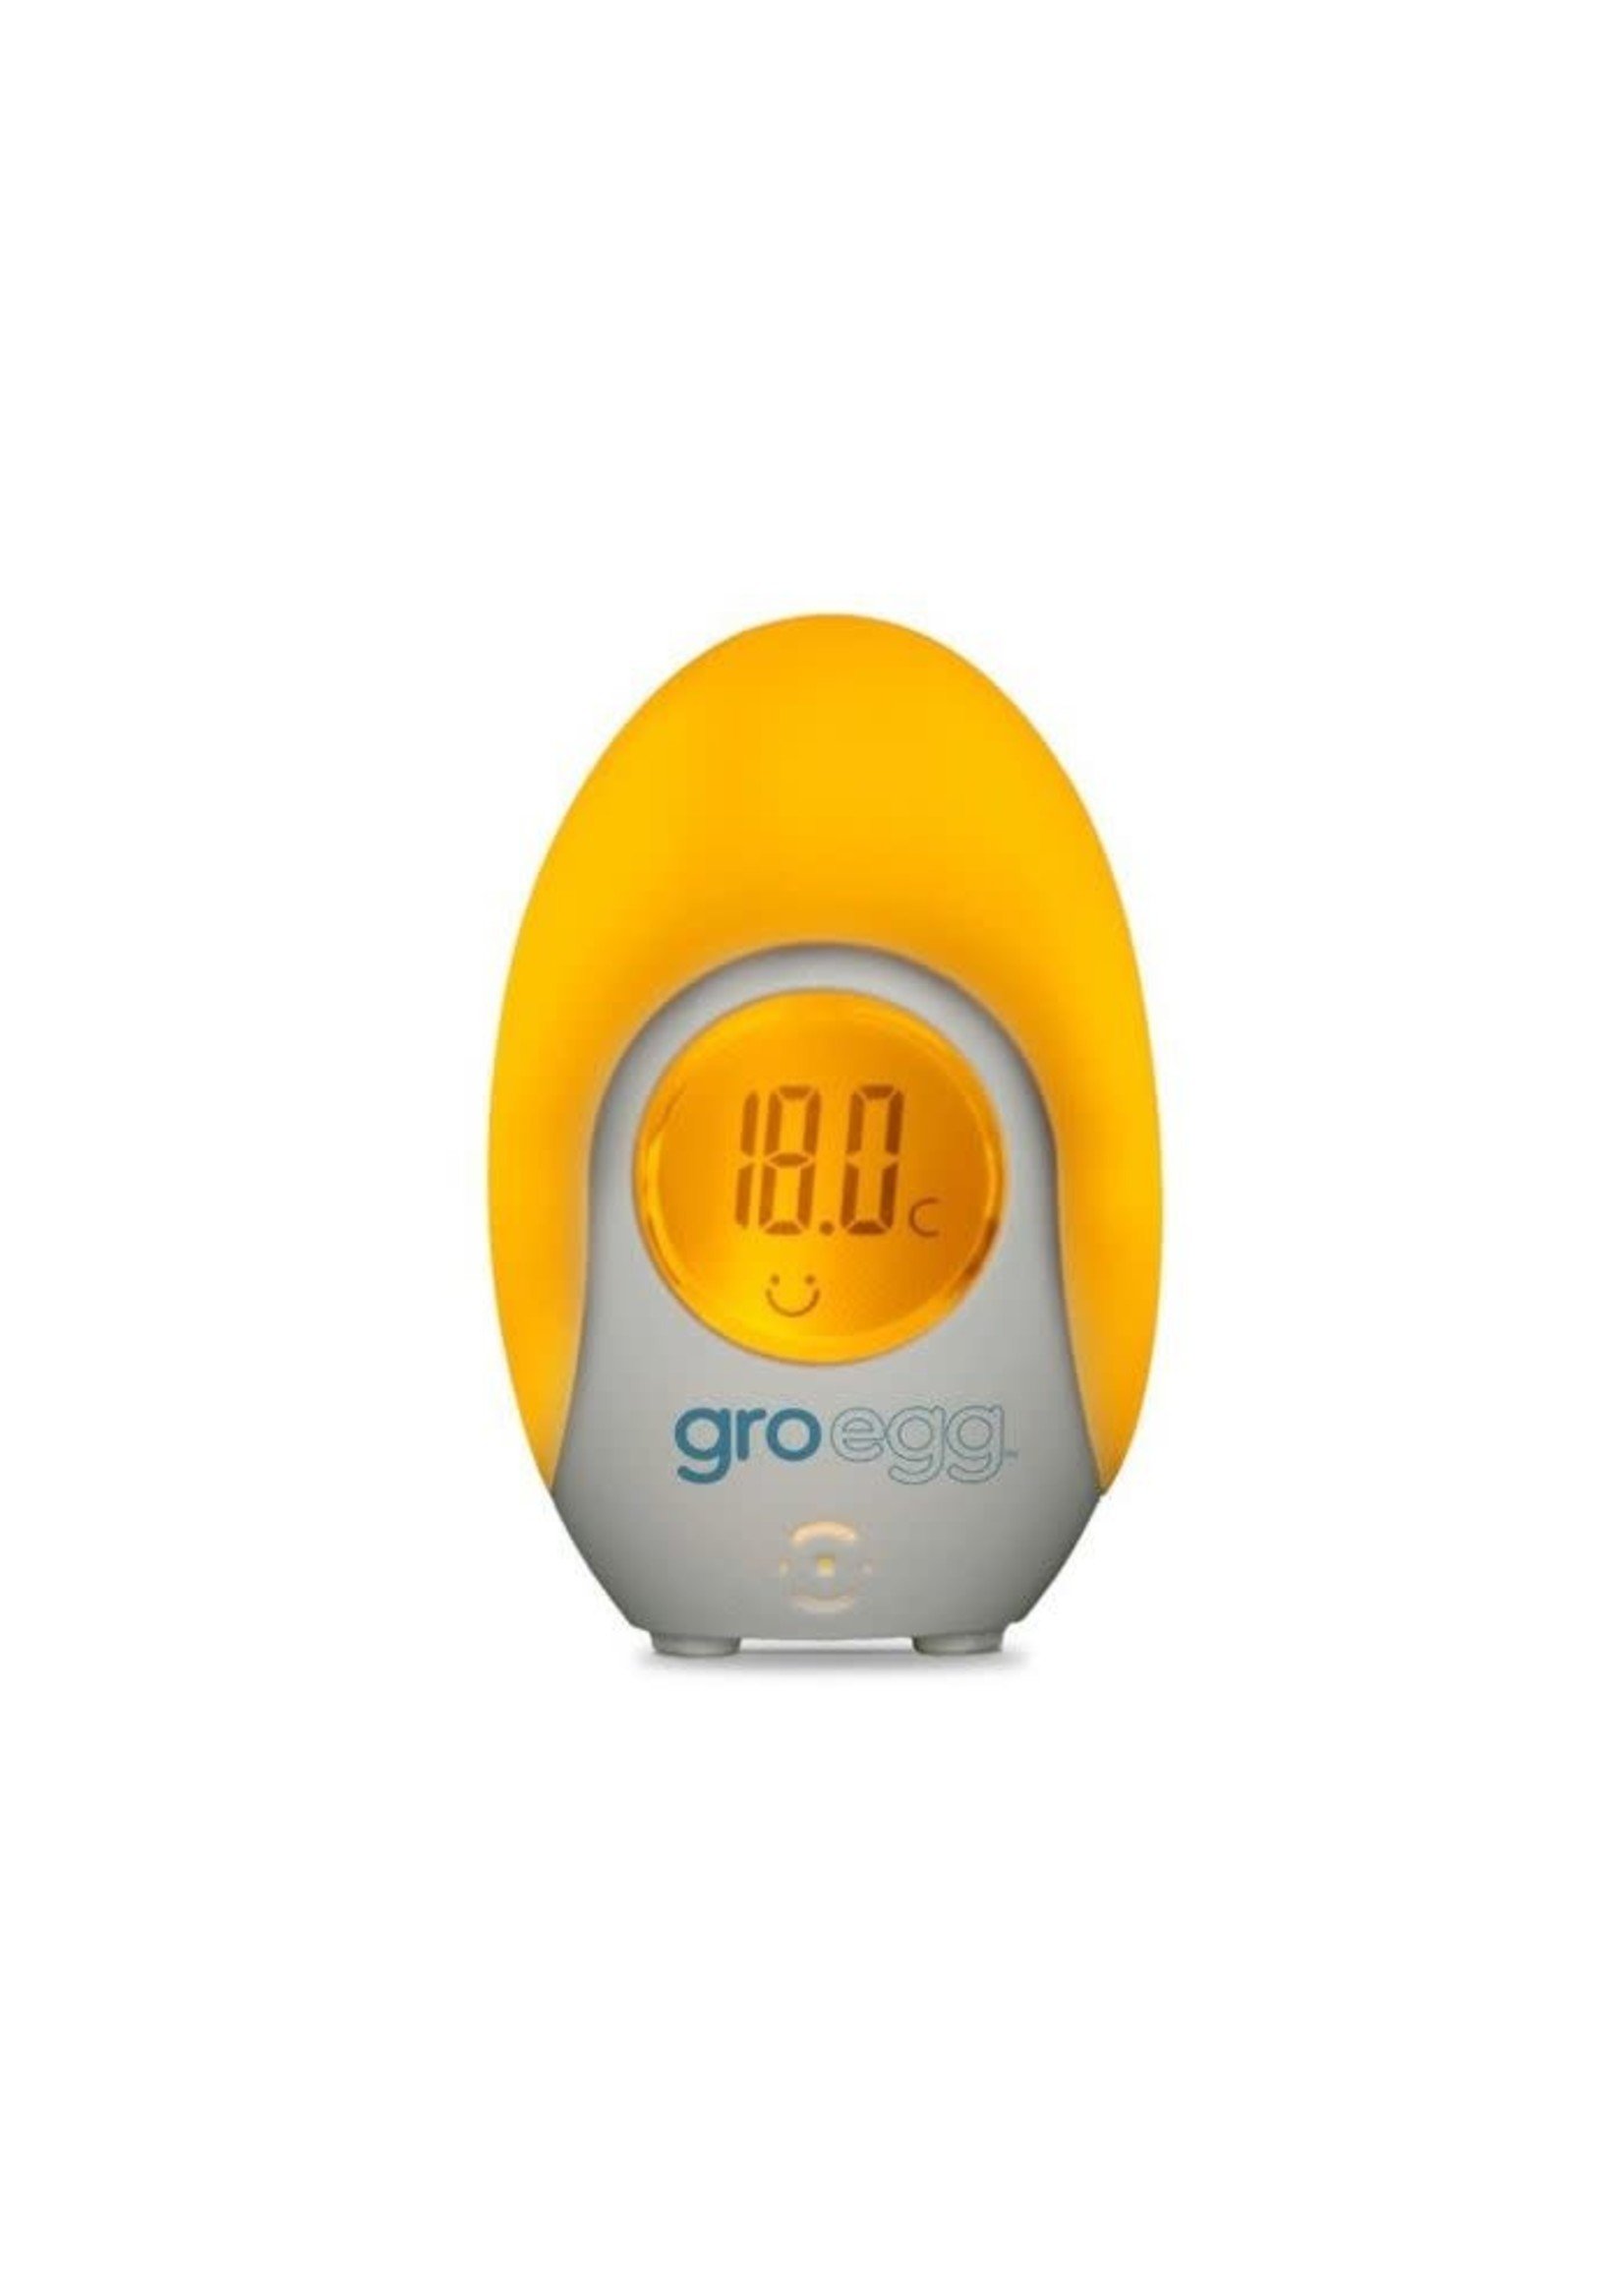 Gro Egg Room Thermometer, in Aylsham, Norfolk